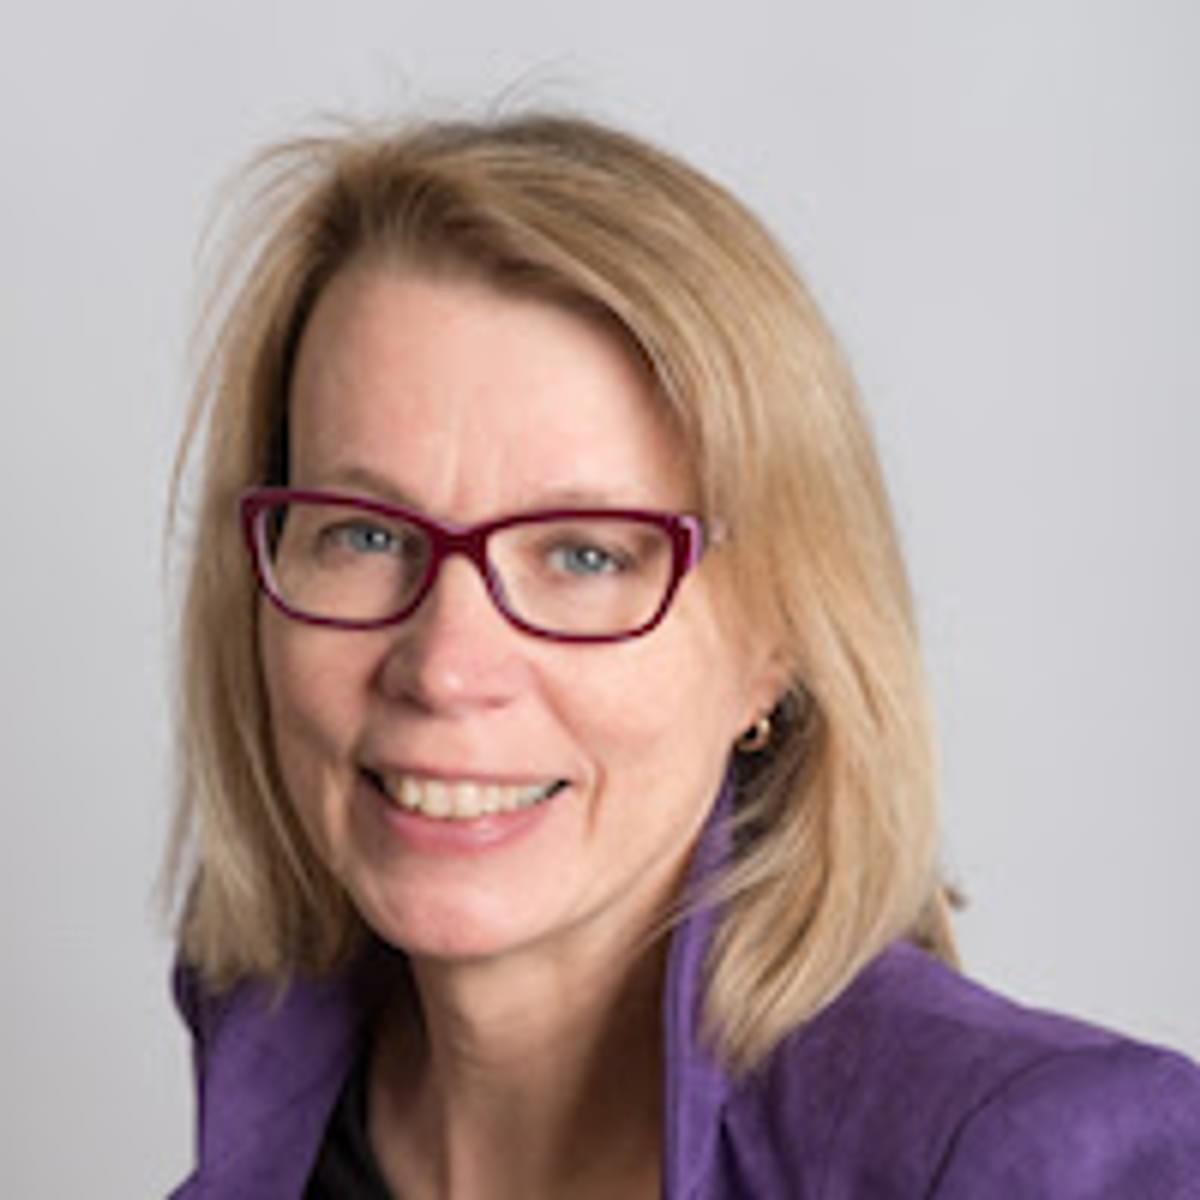 Susan Swarte versterkt TNO als lid Raad van Bestuur en CFO image